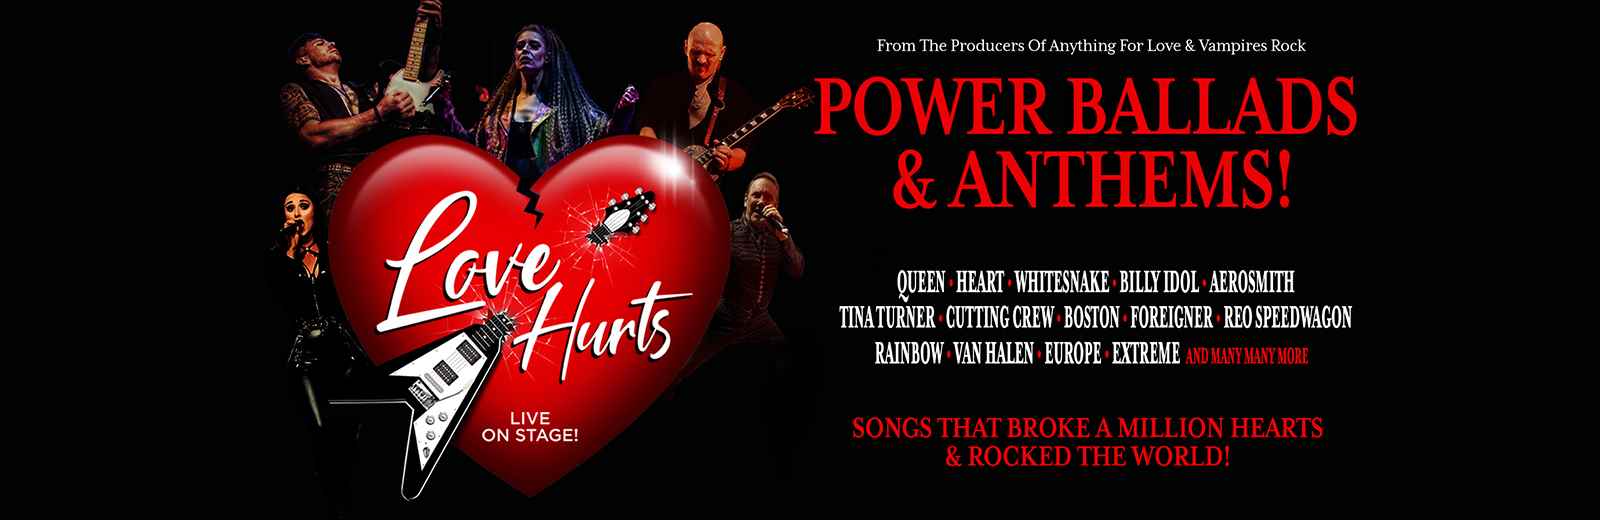 Love Hurts Power Ballads & Anthems 